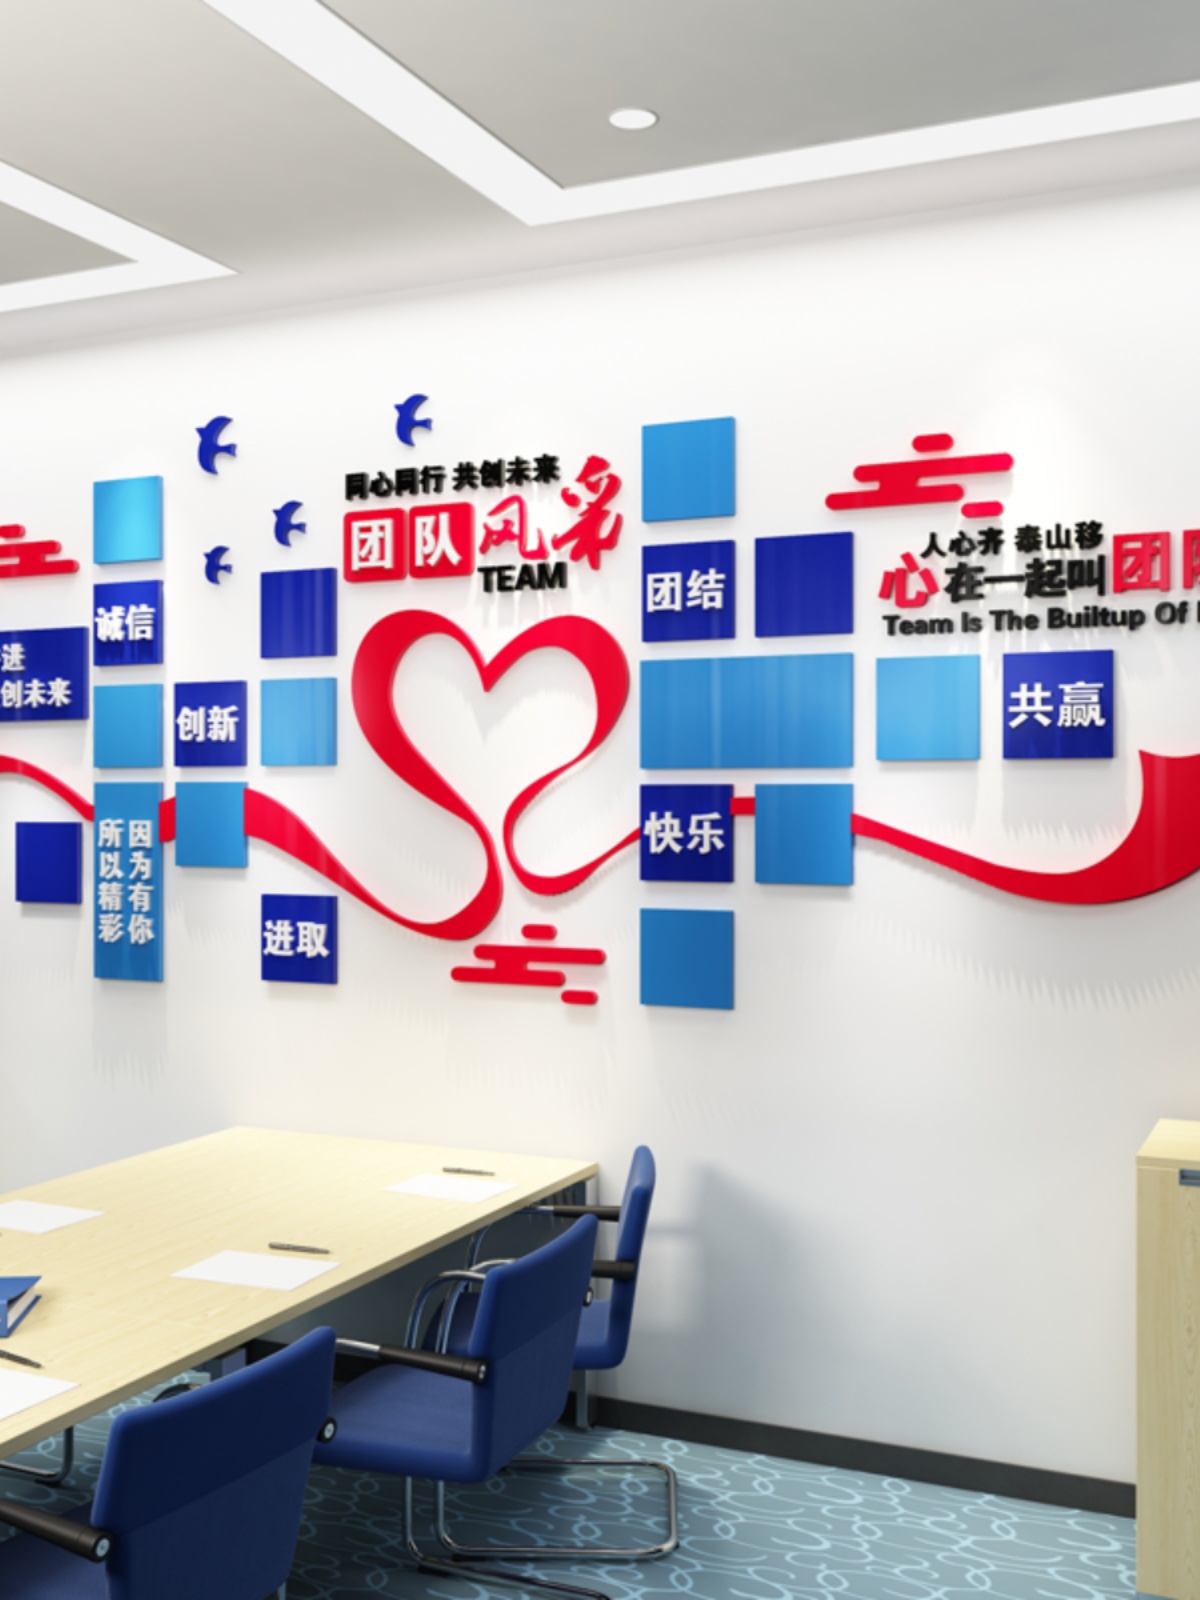 团队风采励志标语文化装饰公司照片墙亚克力3d立体墙贴办公室布置